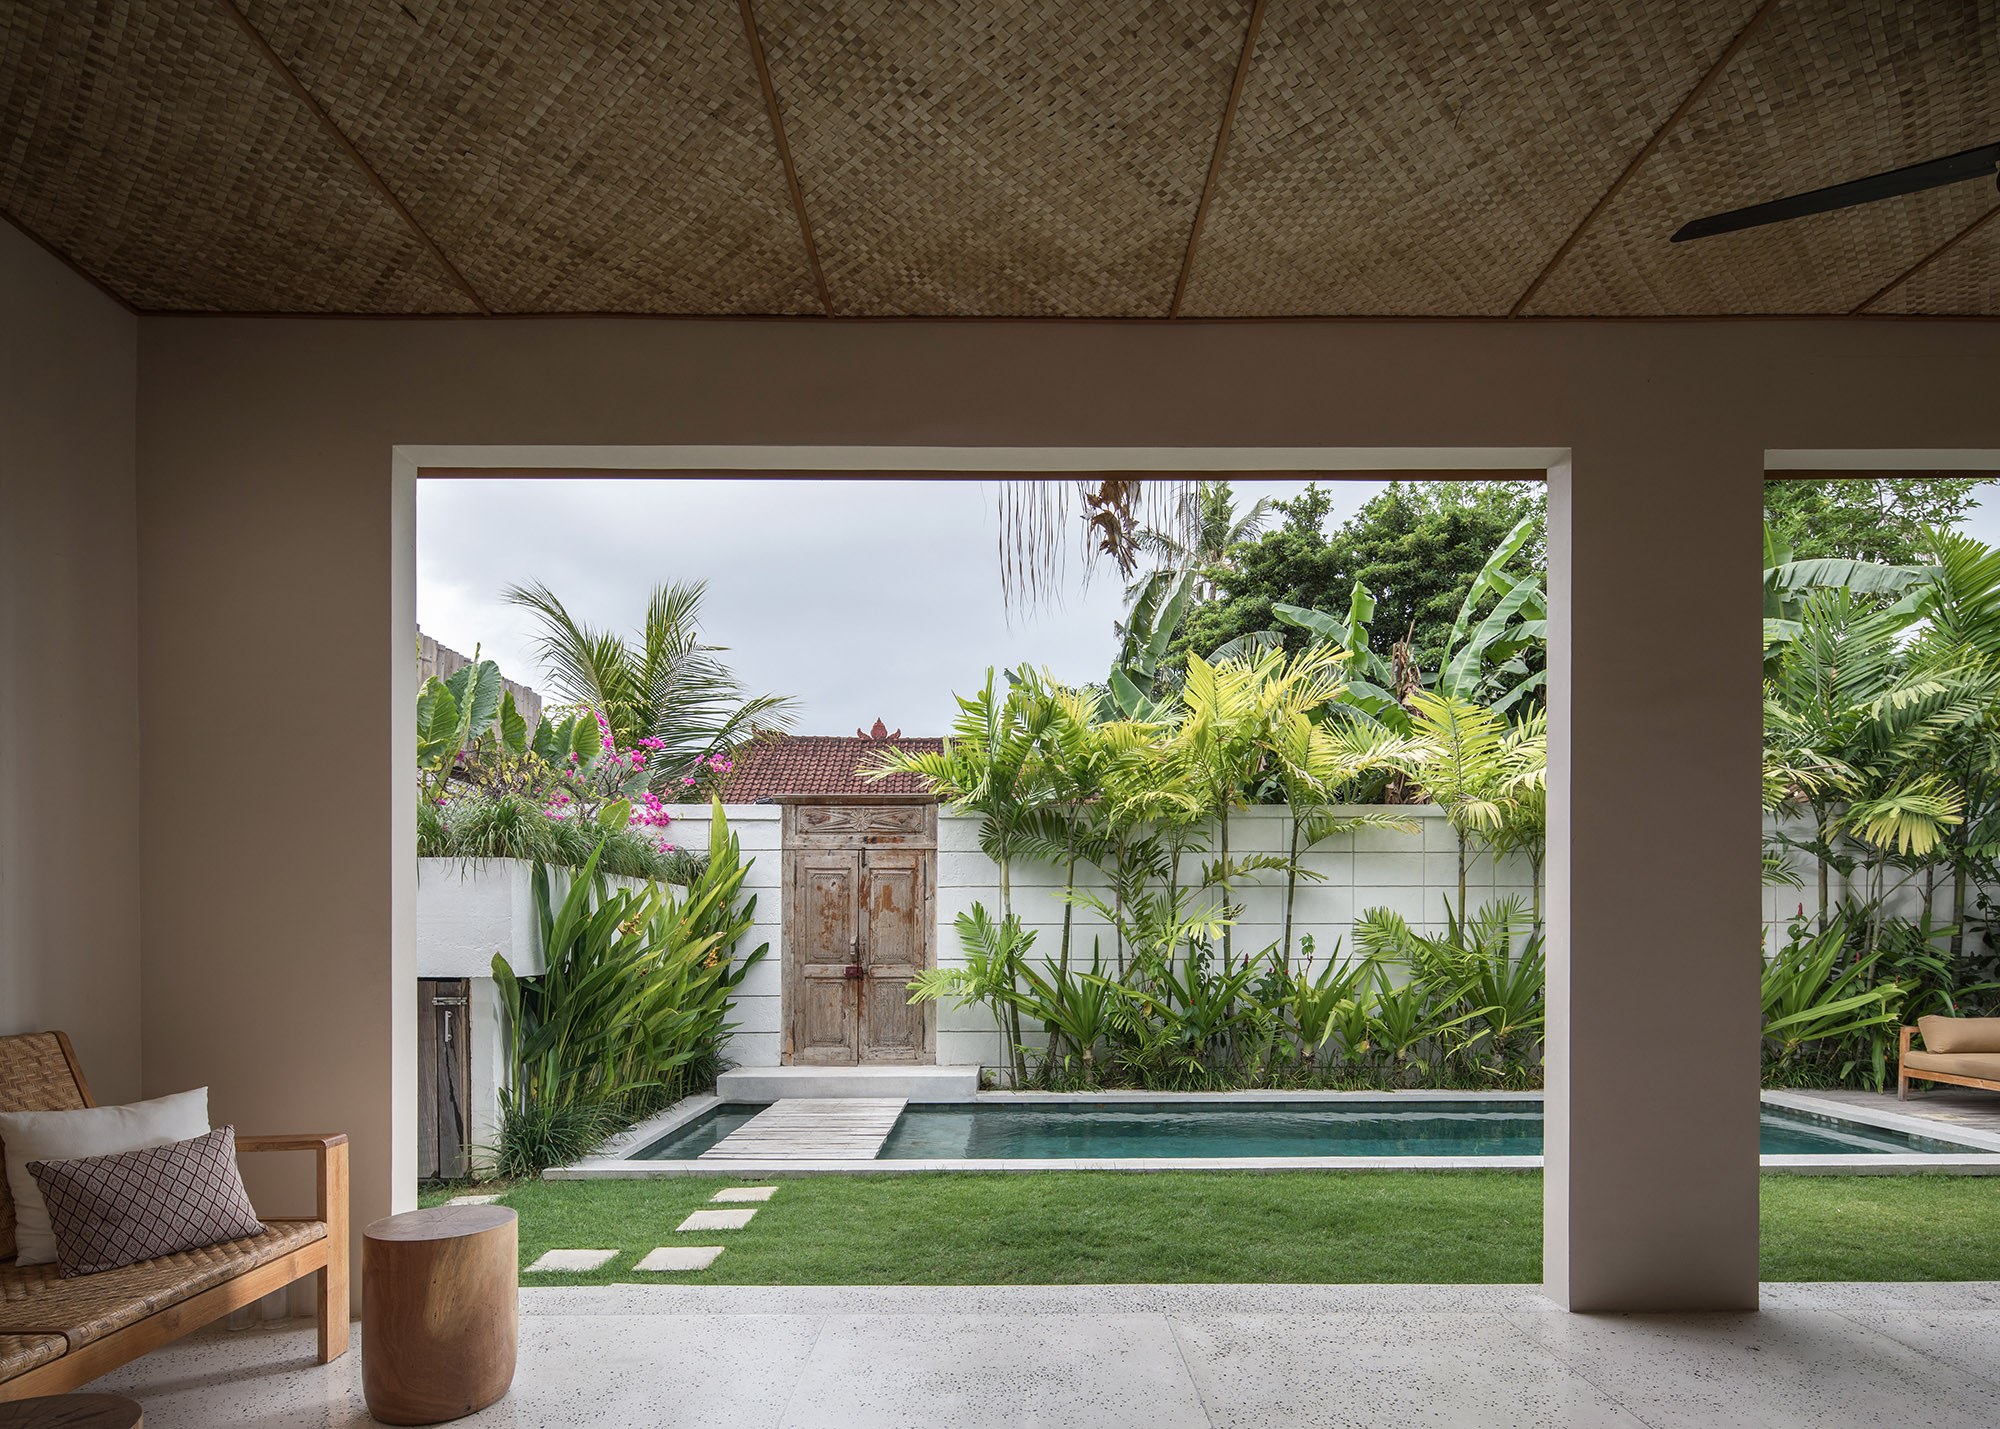 Design Assembly - Two Palms Studio - Bali Architect - Interior Design - Bali Villa - Pool Area